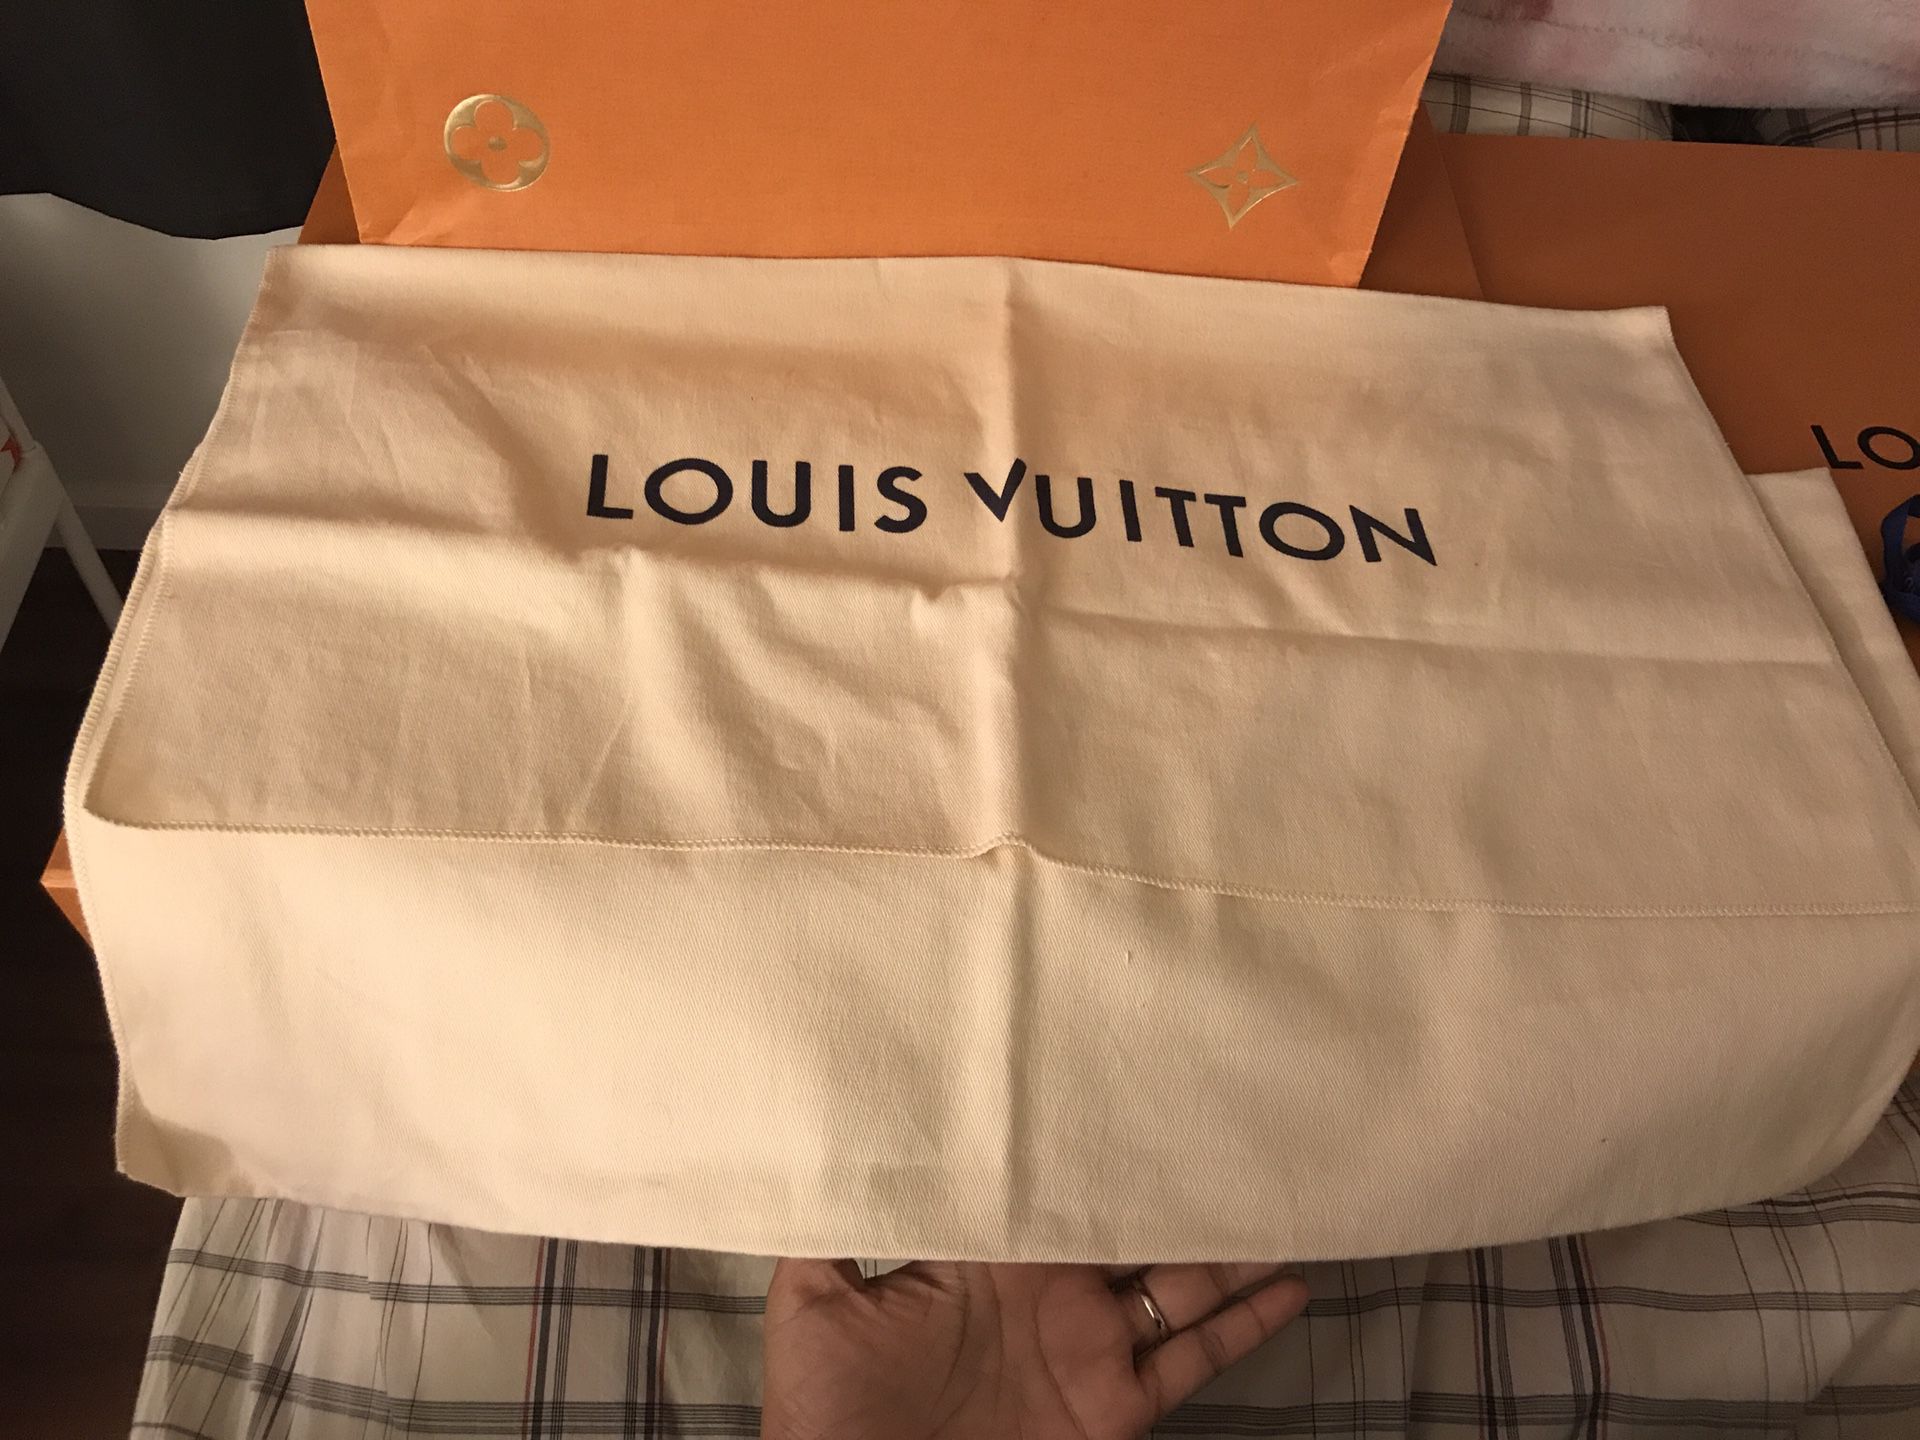 100% original Louis Vuitton dust bag for Sale in La Puente, CA